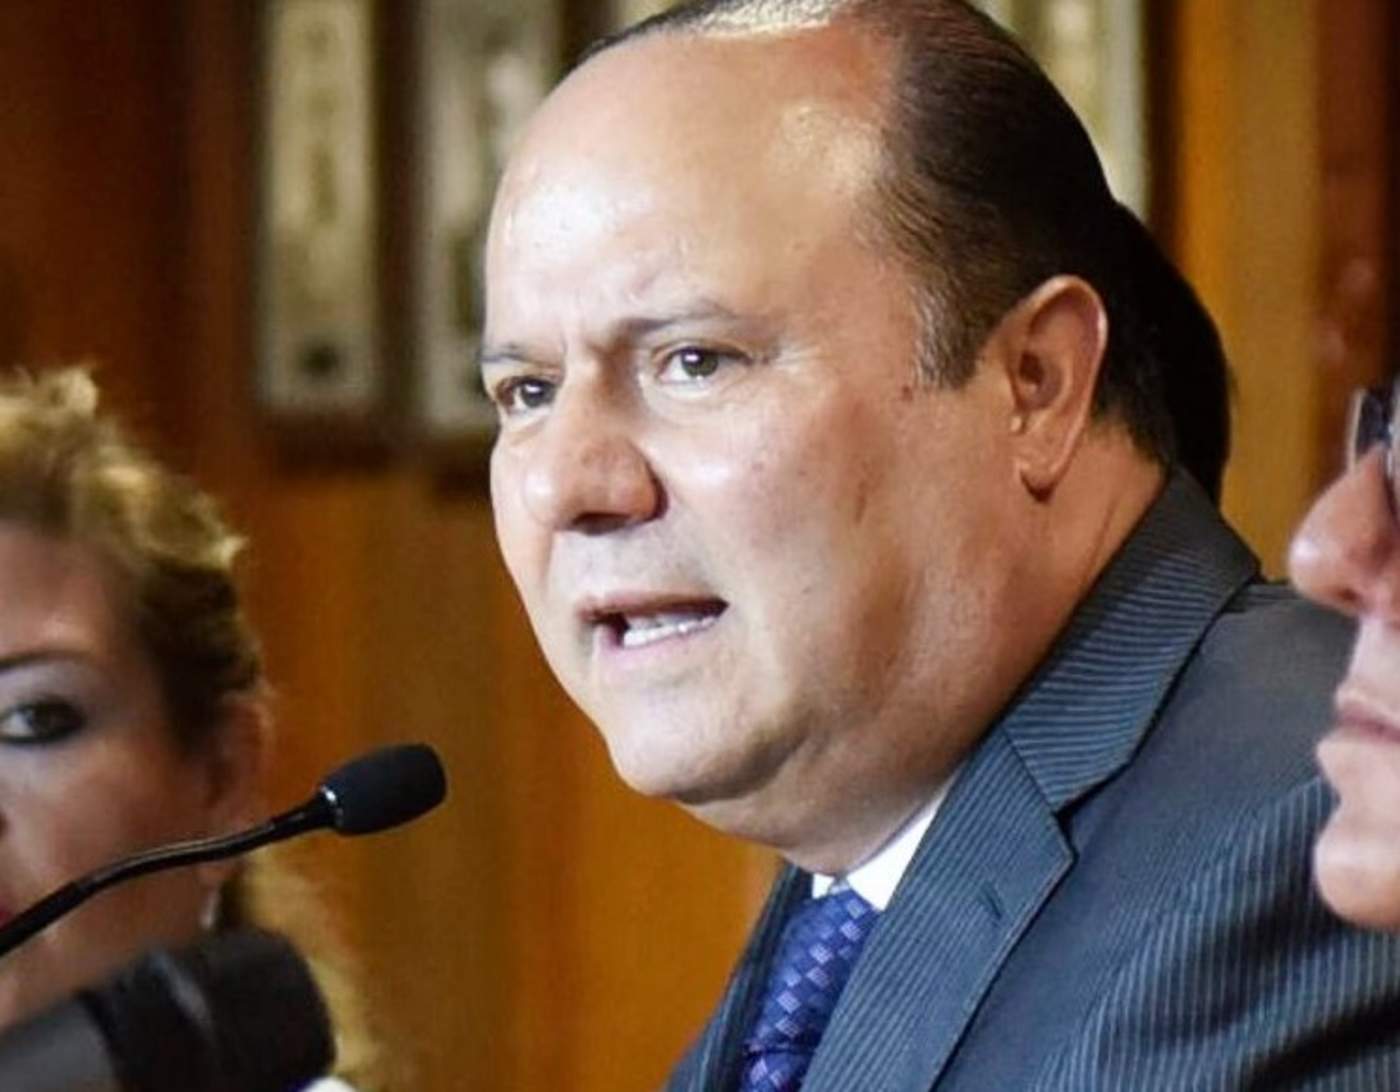 César Duarte Jáquez, exgobernador priista de Chihuahua, lleva más de dos años prófugo y mientras tanto siguen surgiendo nuevas acusaciones por desvíos millonarios. (ARCHIVO)